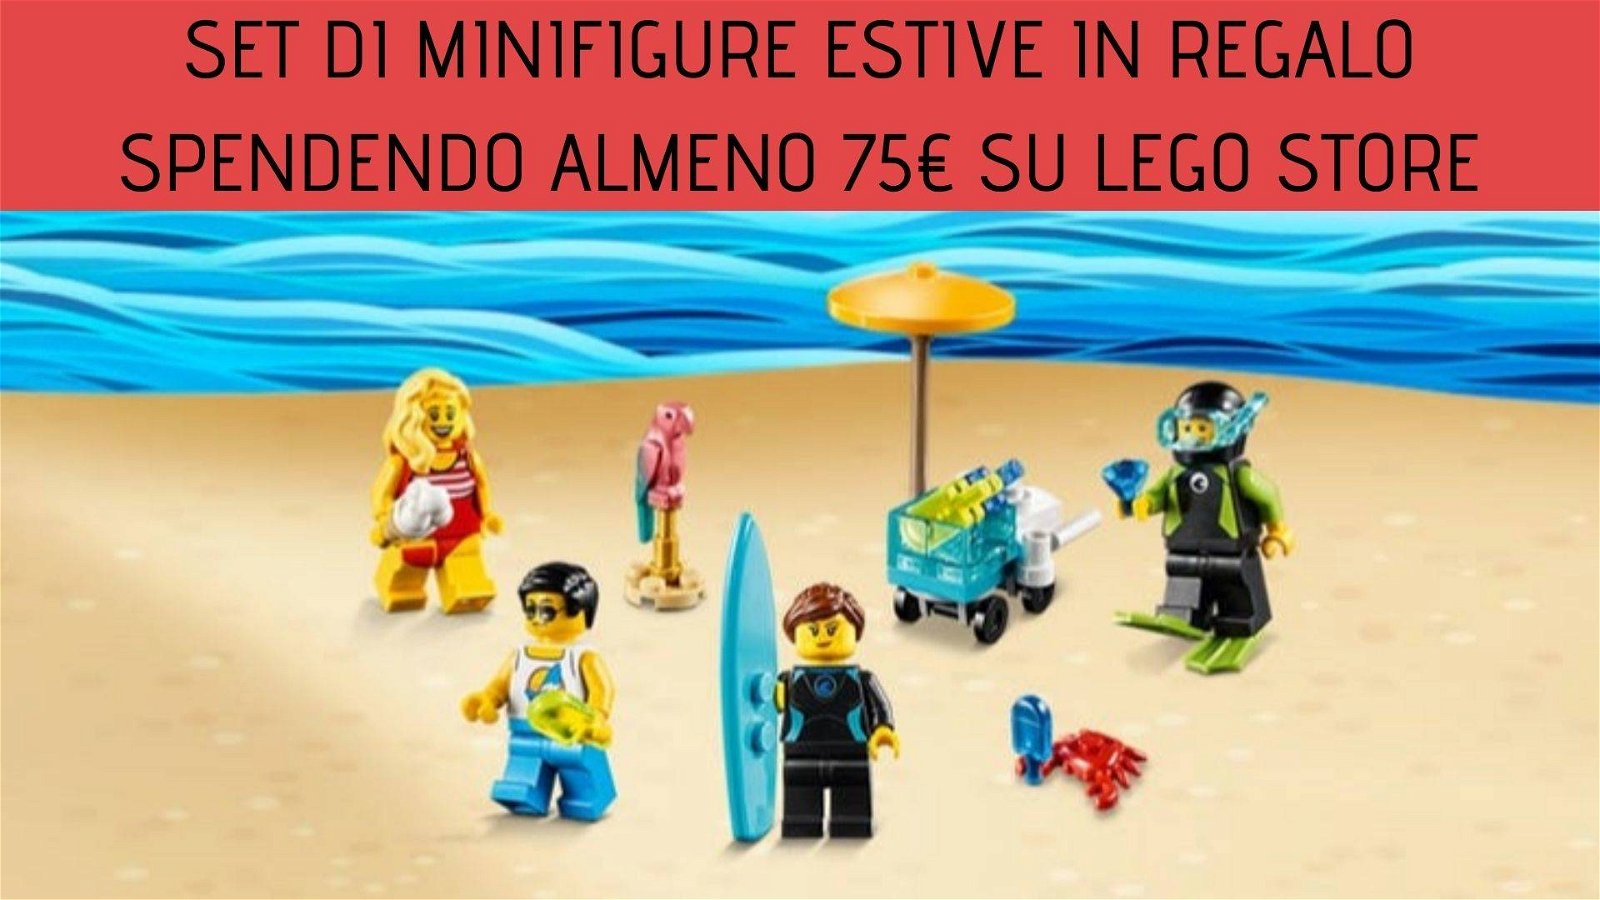 Immagine di Set di minifigure estive in regalo spendendo almeno 75€ su LEGO store